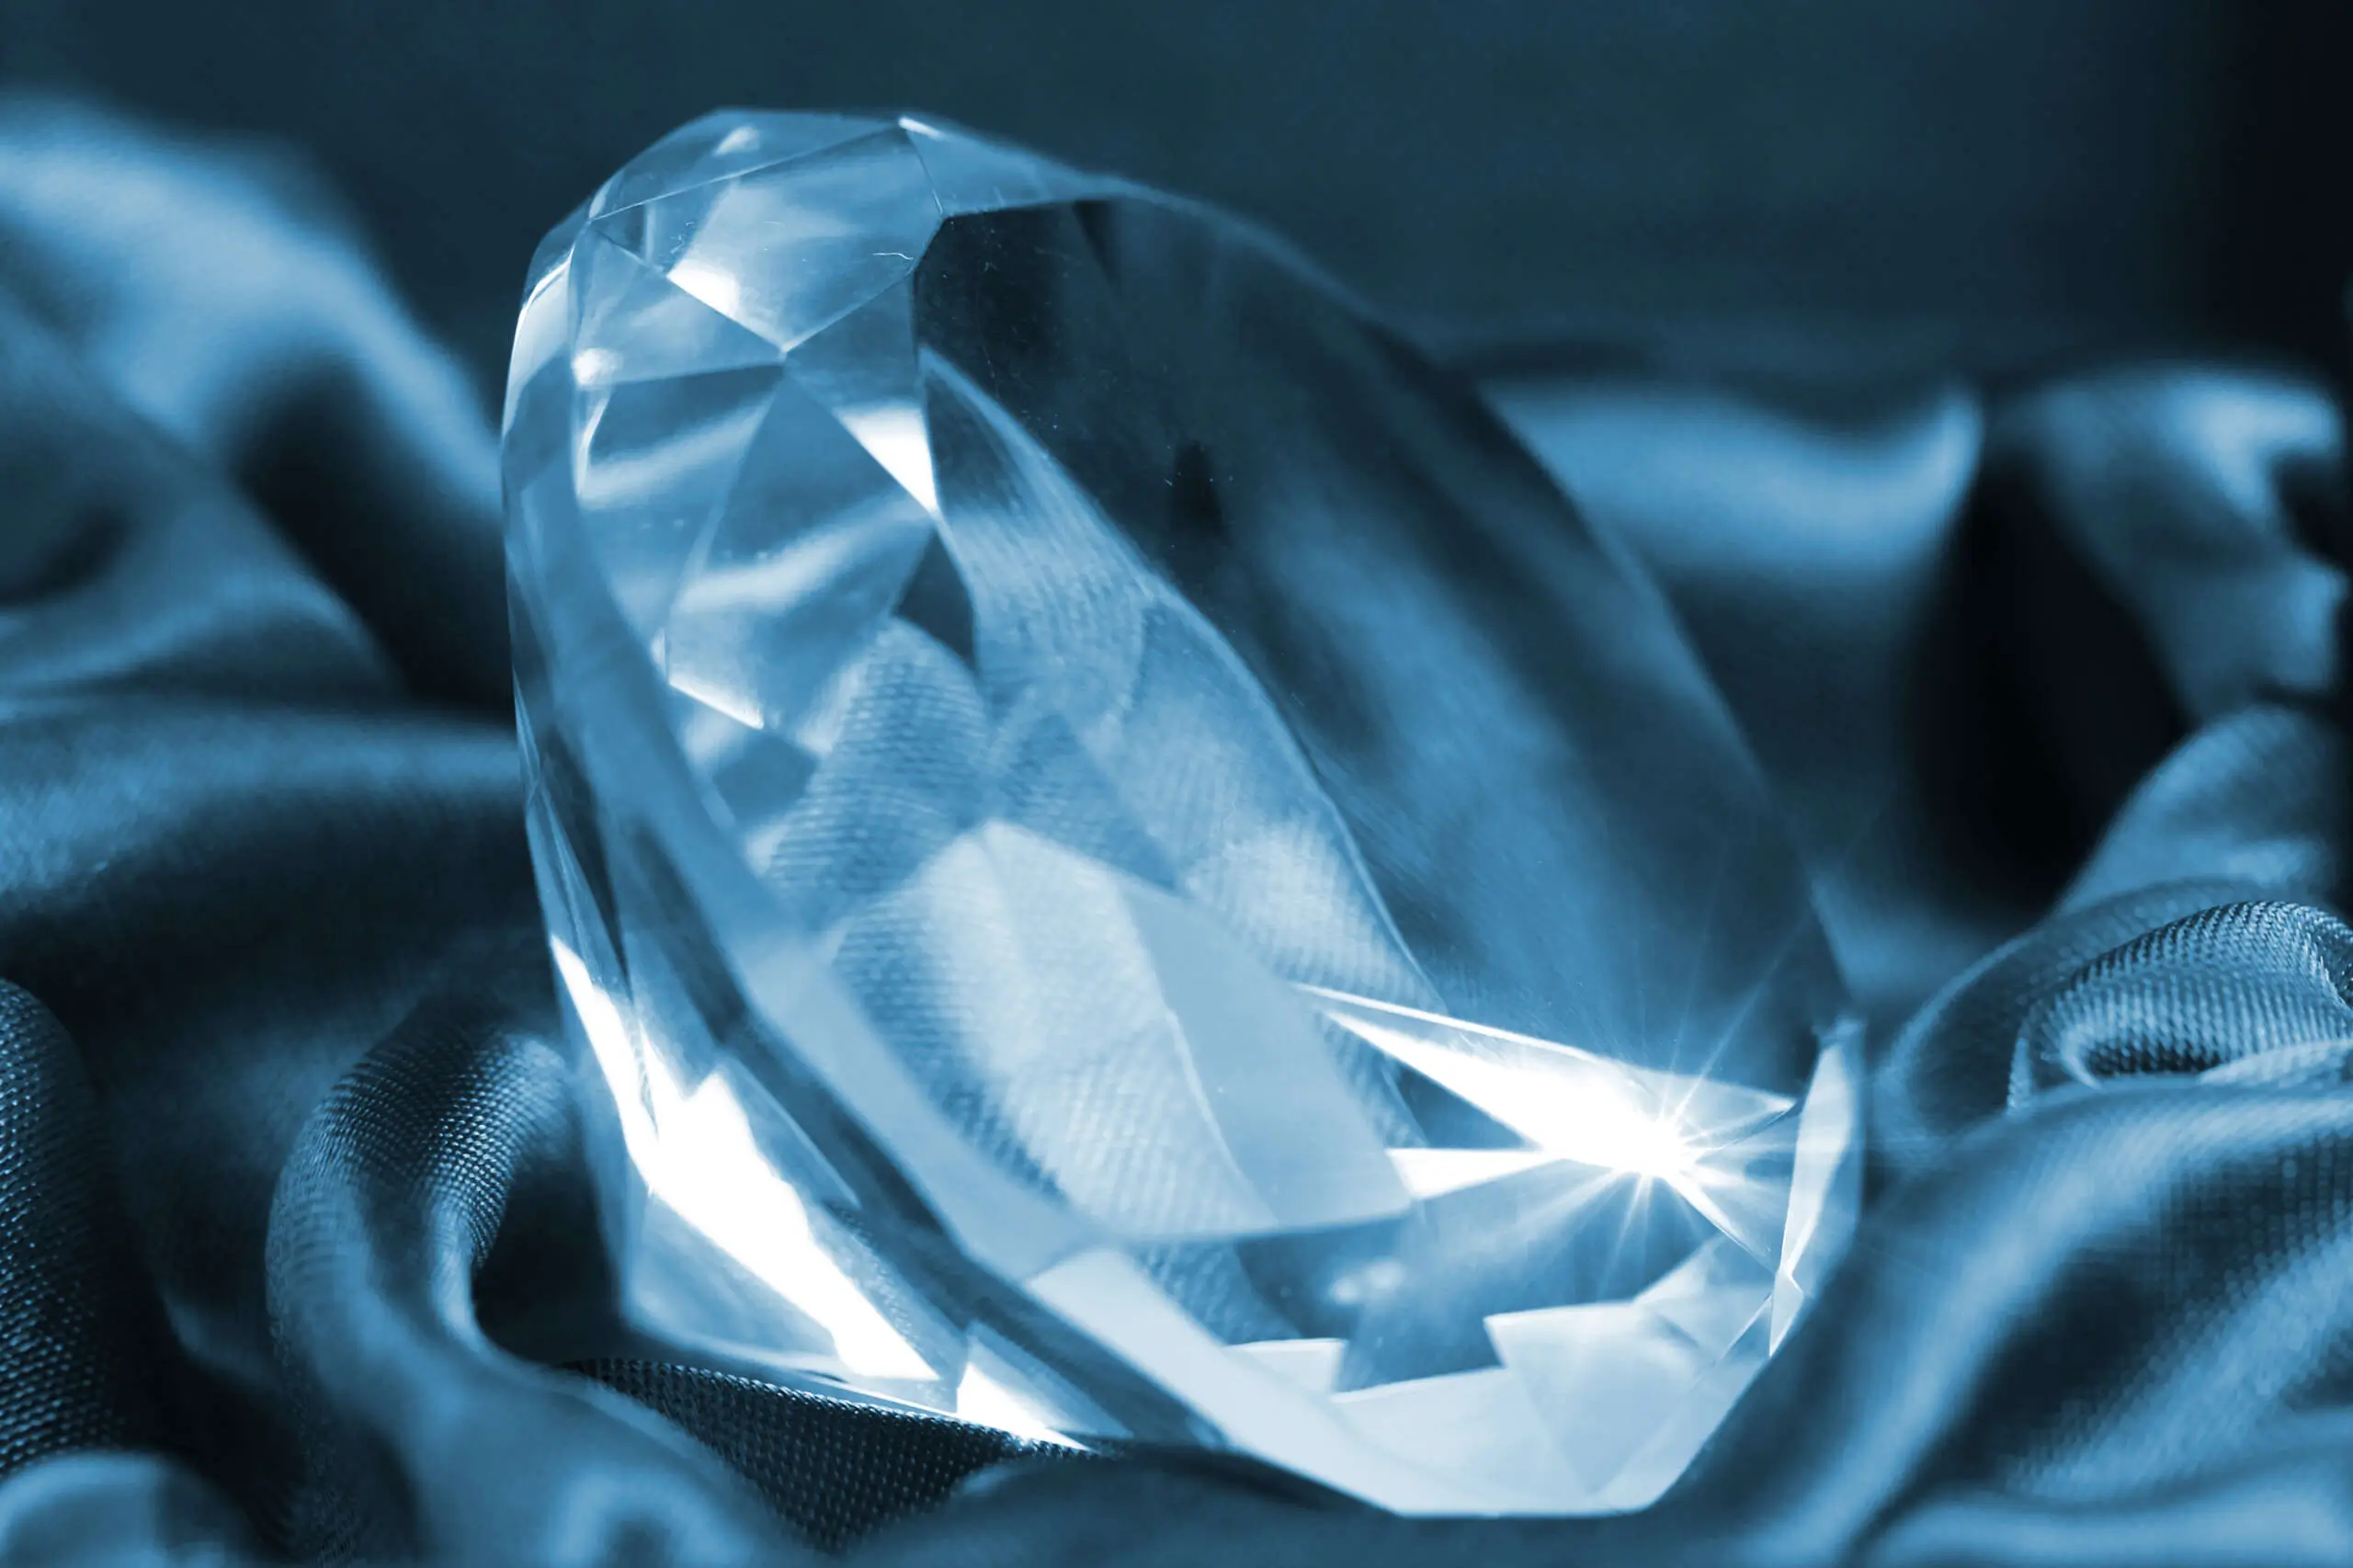 Vendita diamanti certificati: come funziona e a chi rivolgersi